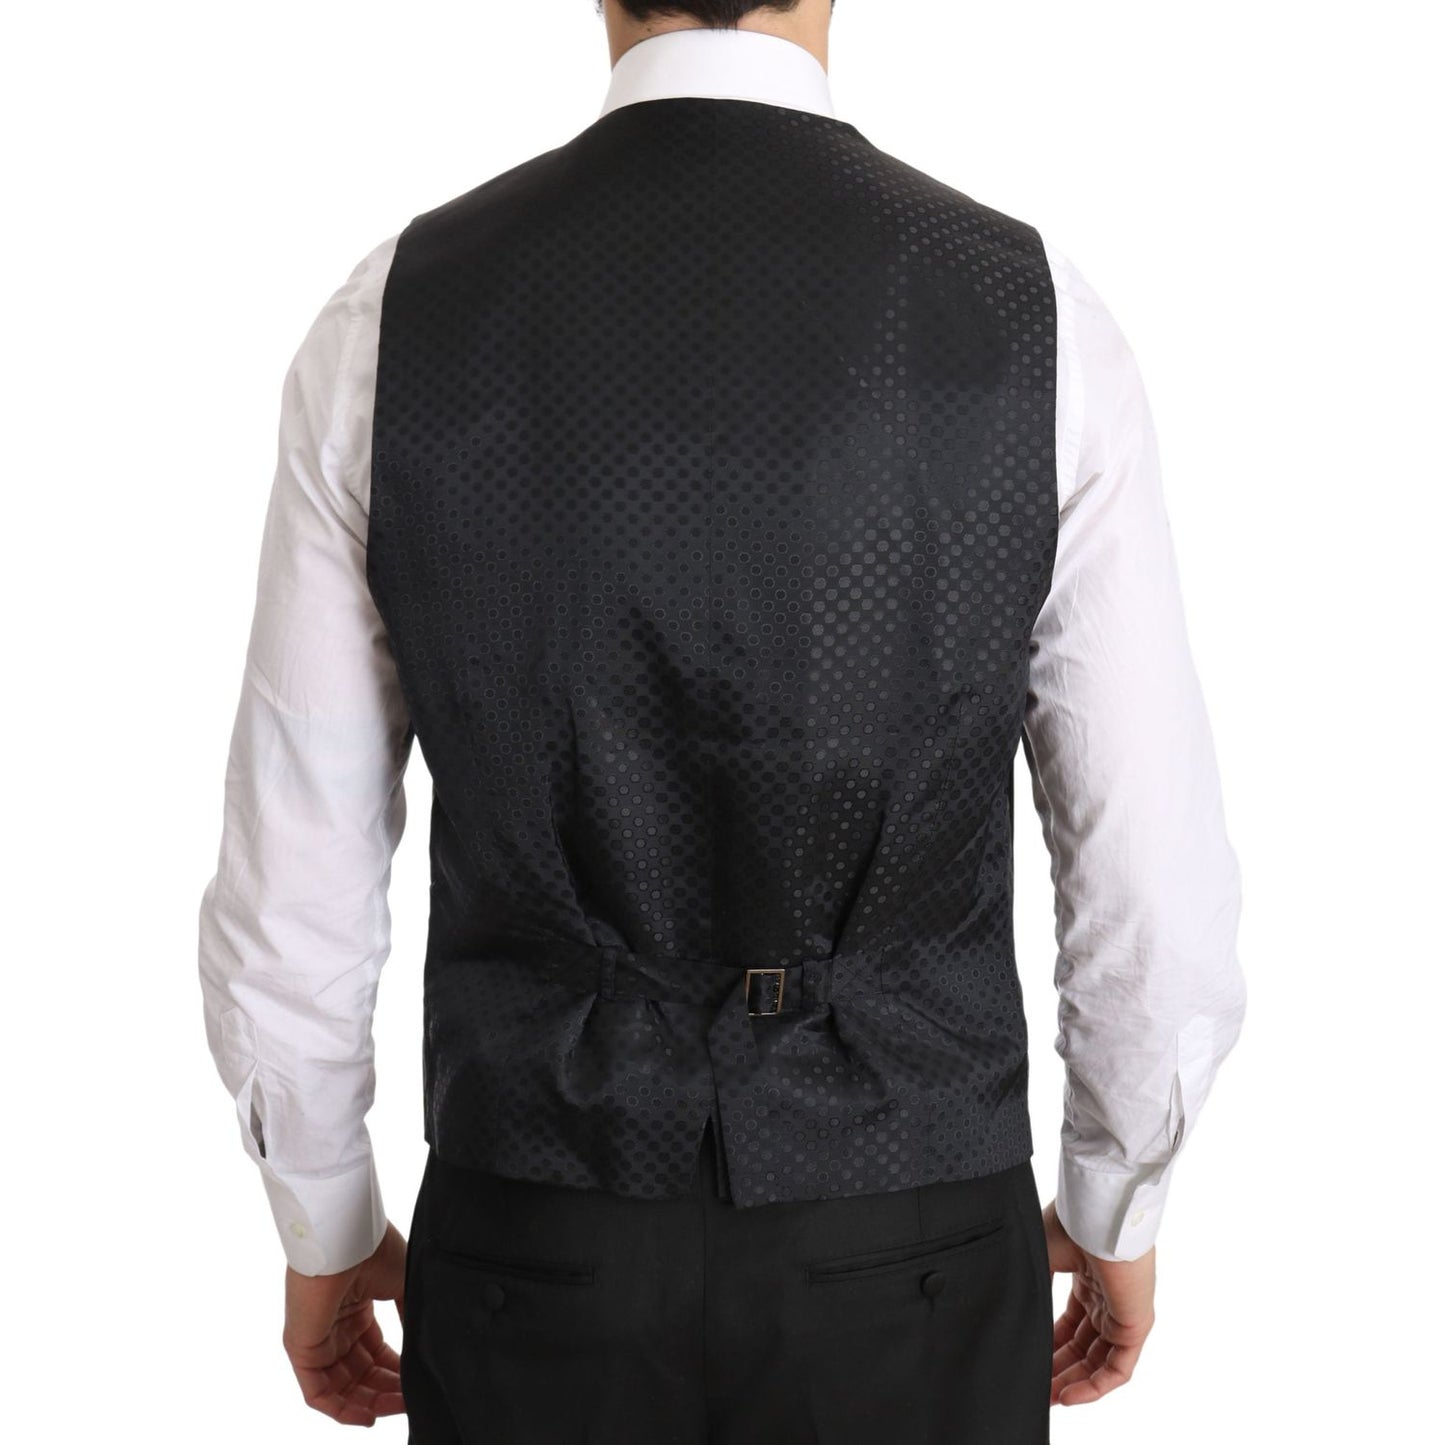 Dolce & Gabbana Elegant Gray Formal Vest - Regular Fit gray-gilet-staff-regular-fit-formal-vest IMG_1780-scaled.jpg